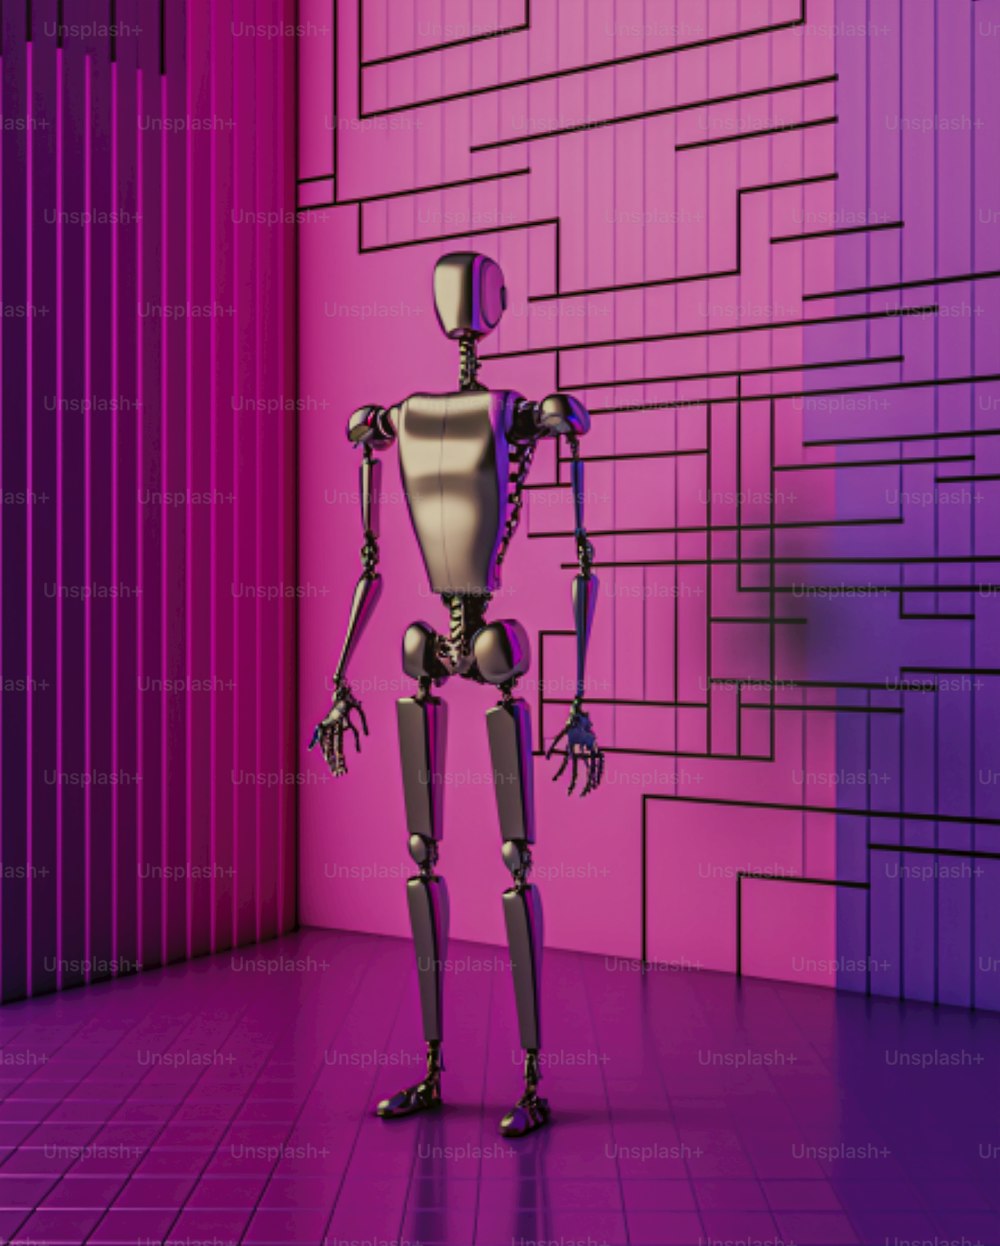 Un robot parado frente a una pared rosa y púrpura